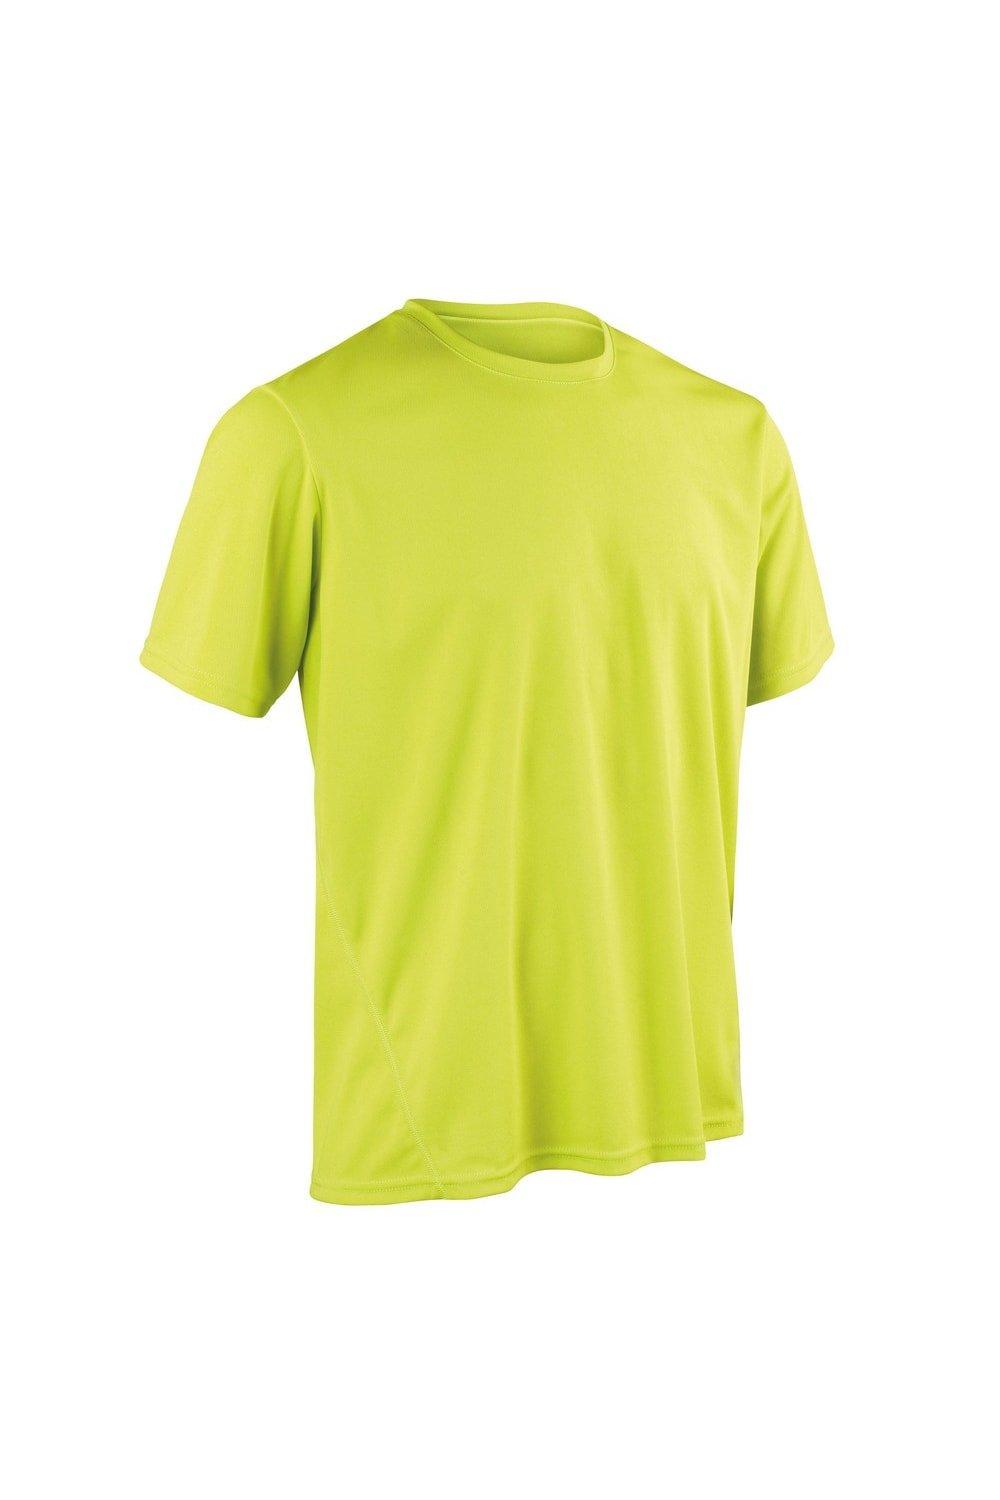 Быстросохнущая спортивная футболка с короткими рукавами Spiro, зеленый